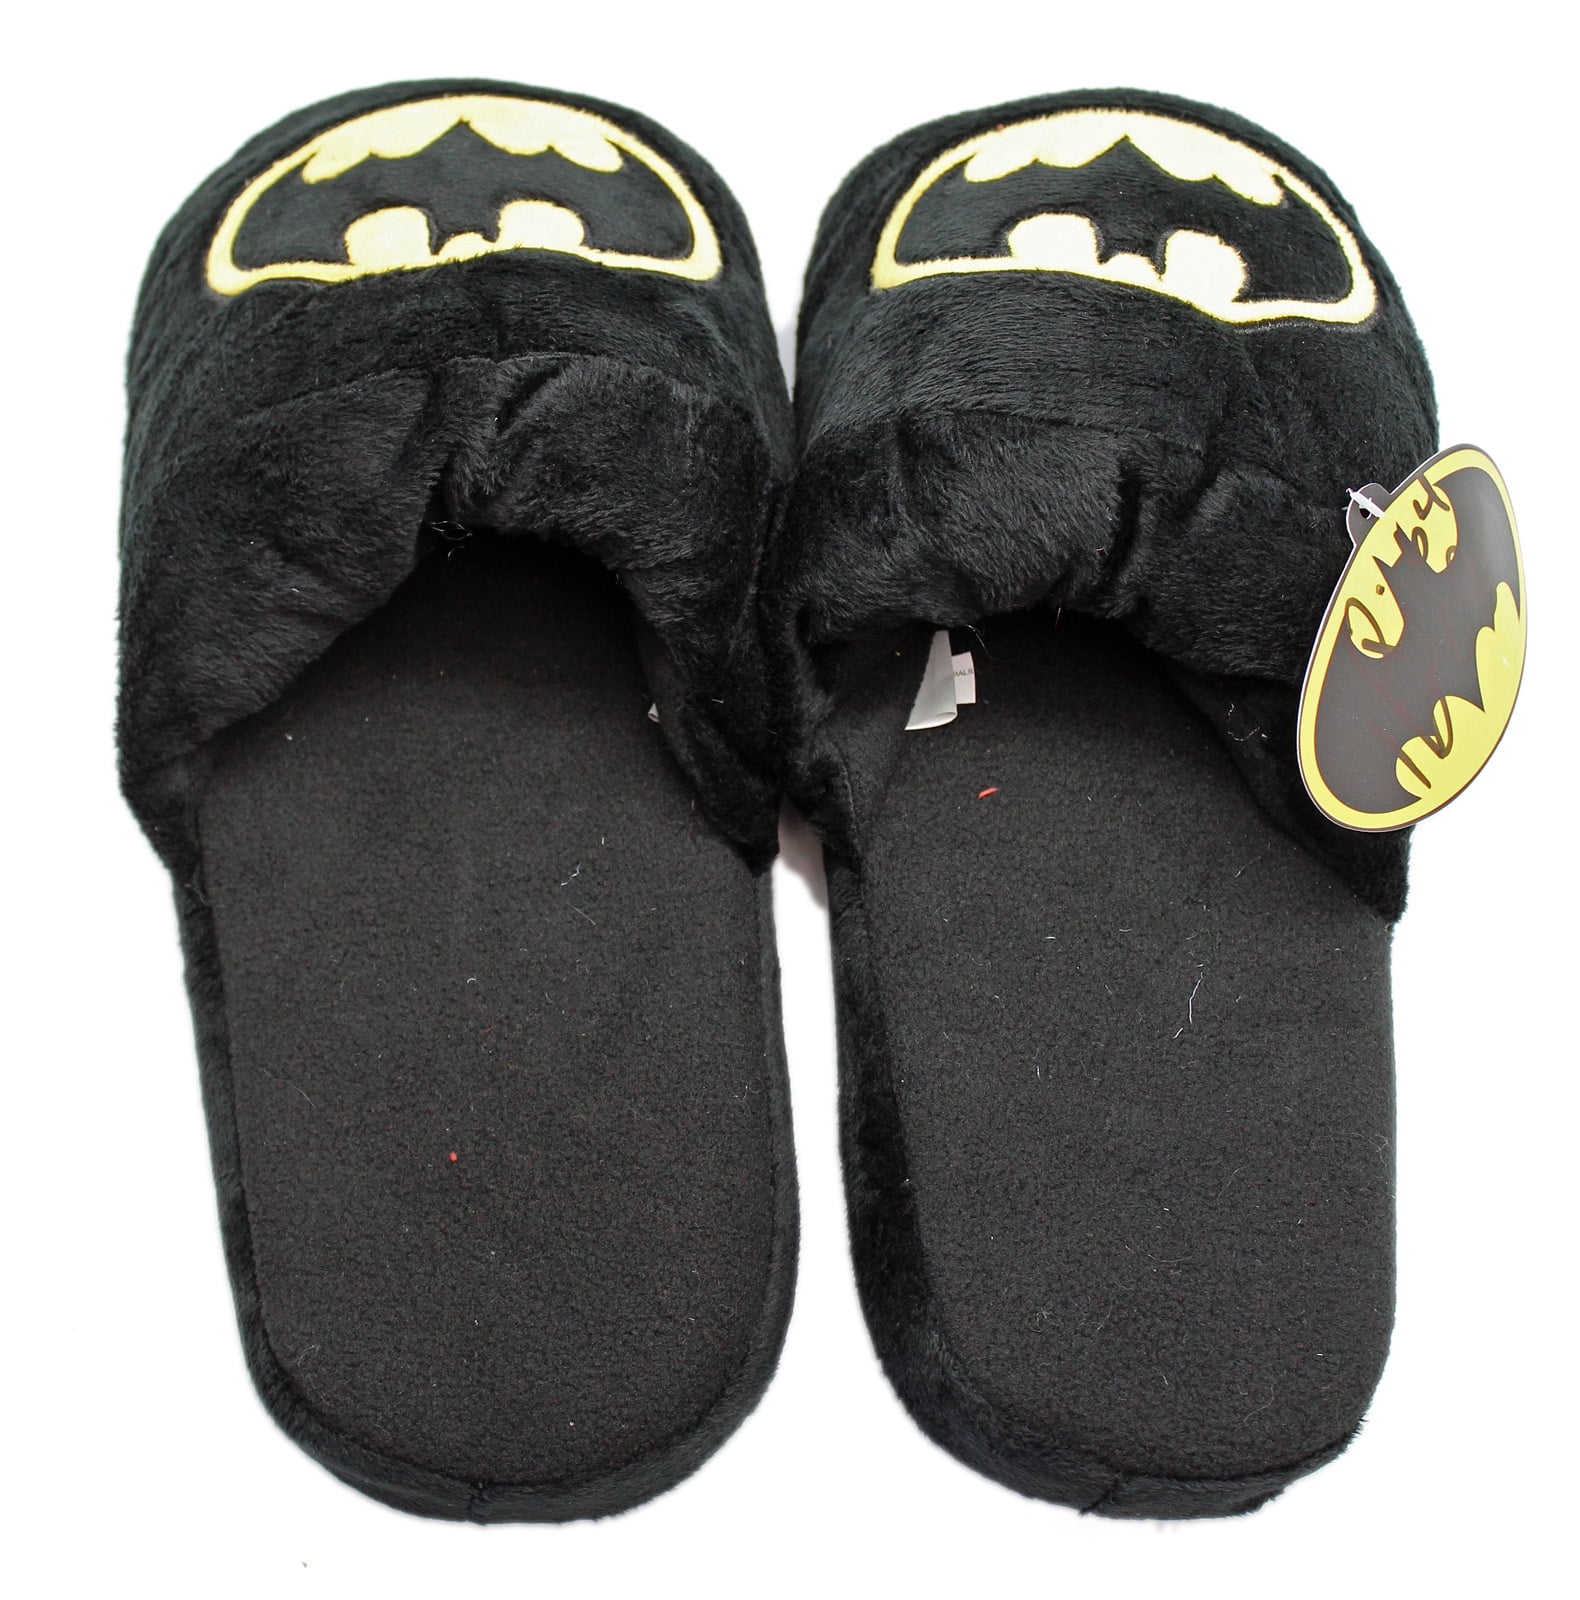 Batman Shoes for sale in Kansas City, Missouri | Facebook Marketplace